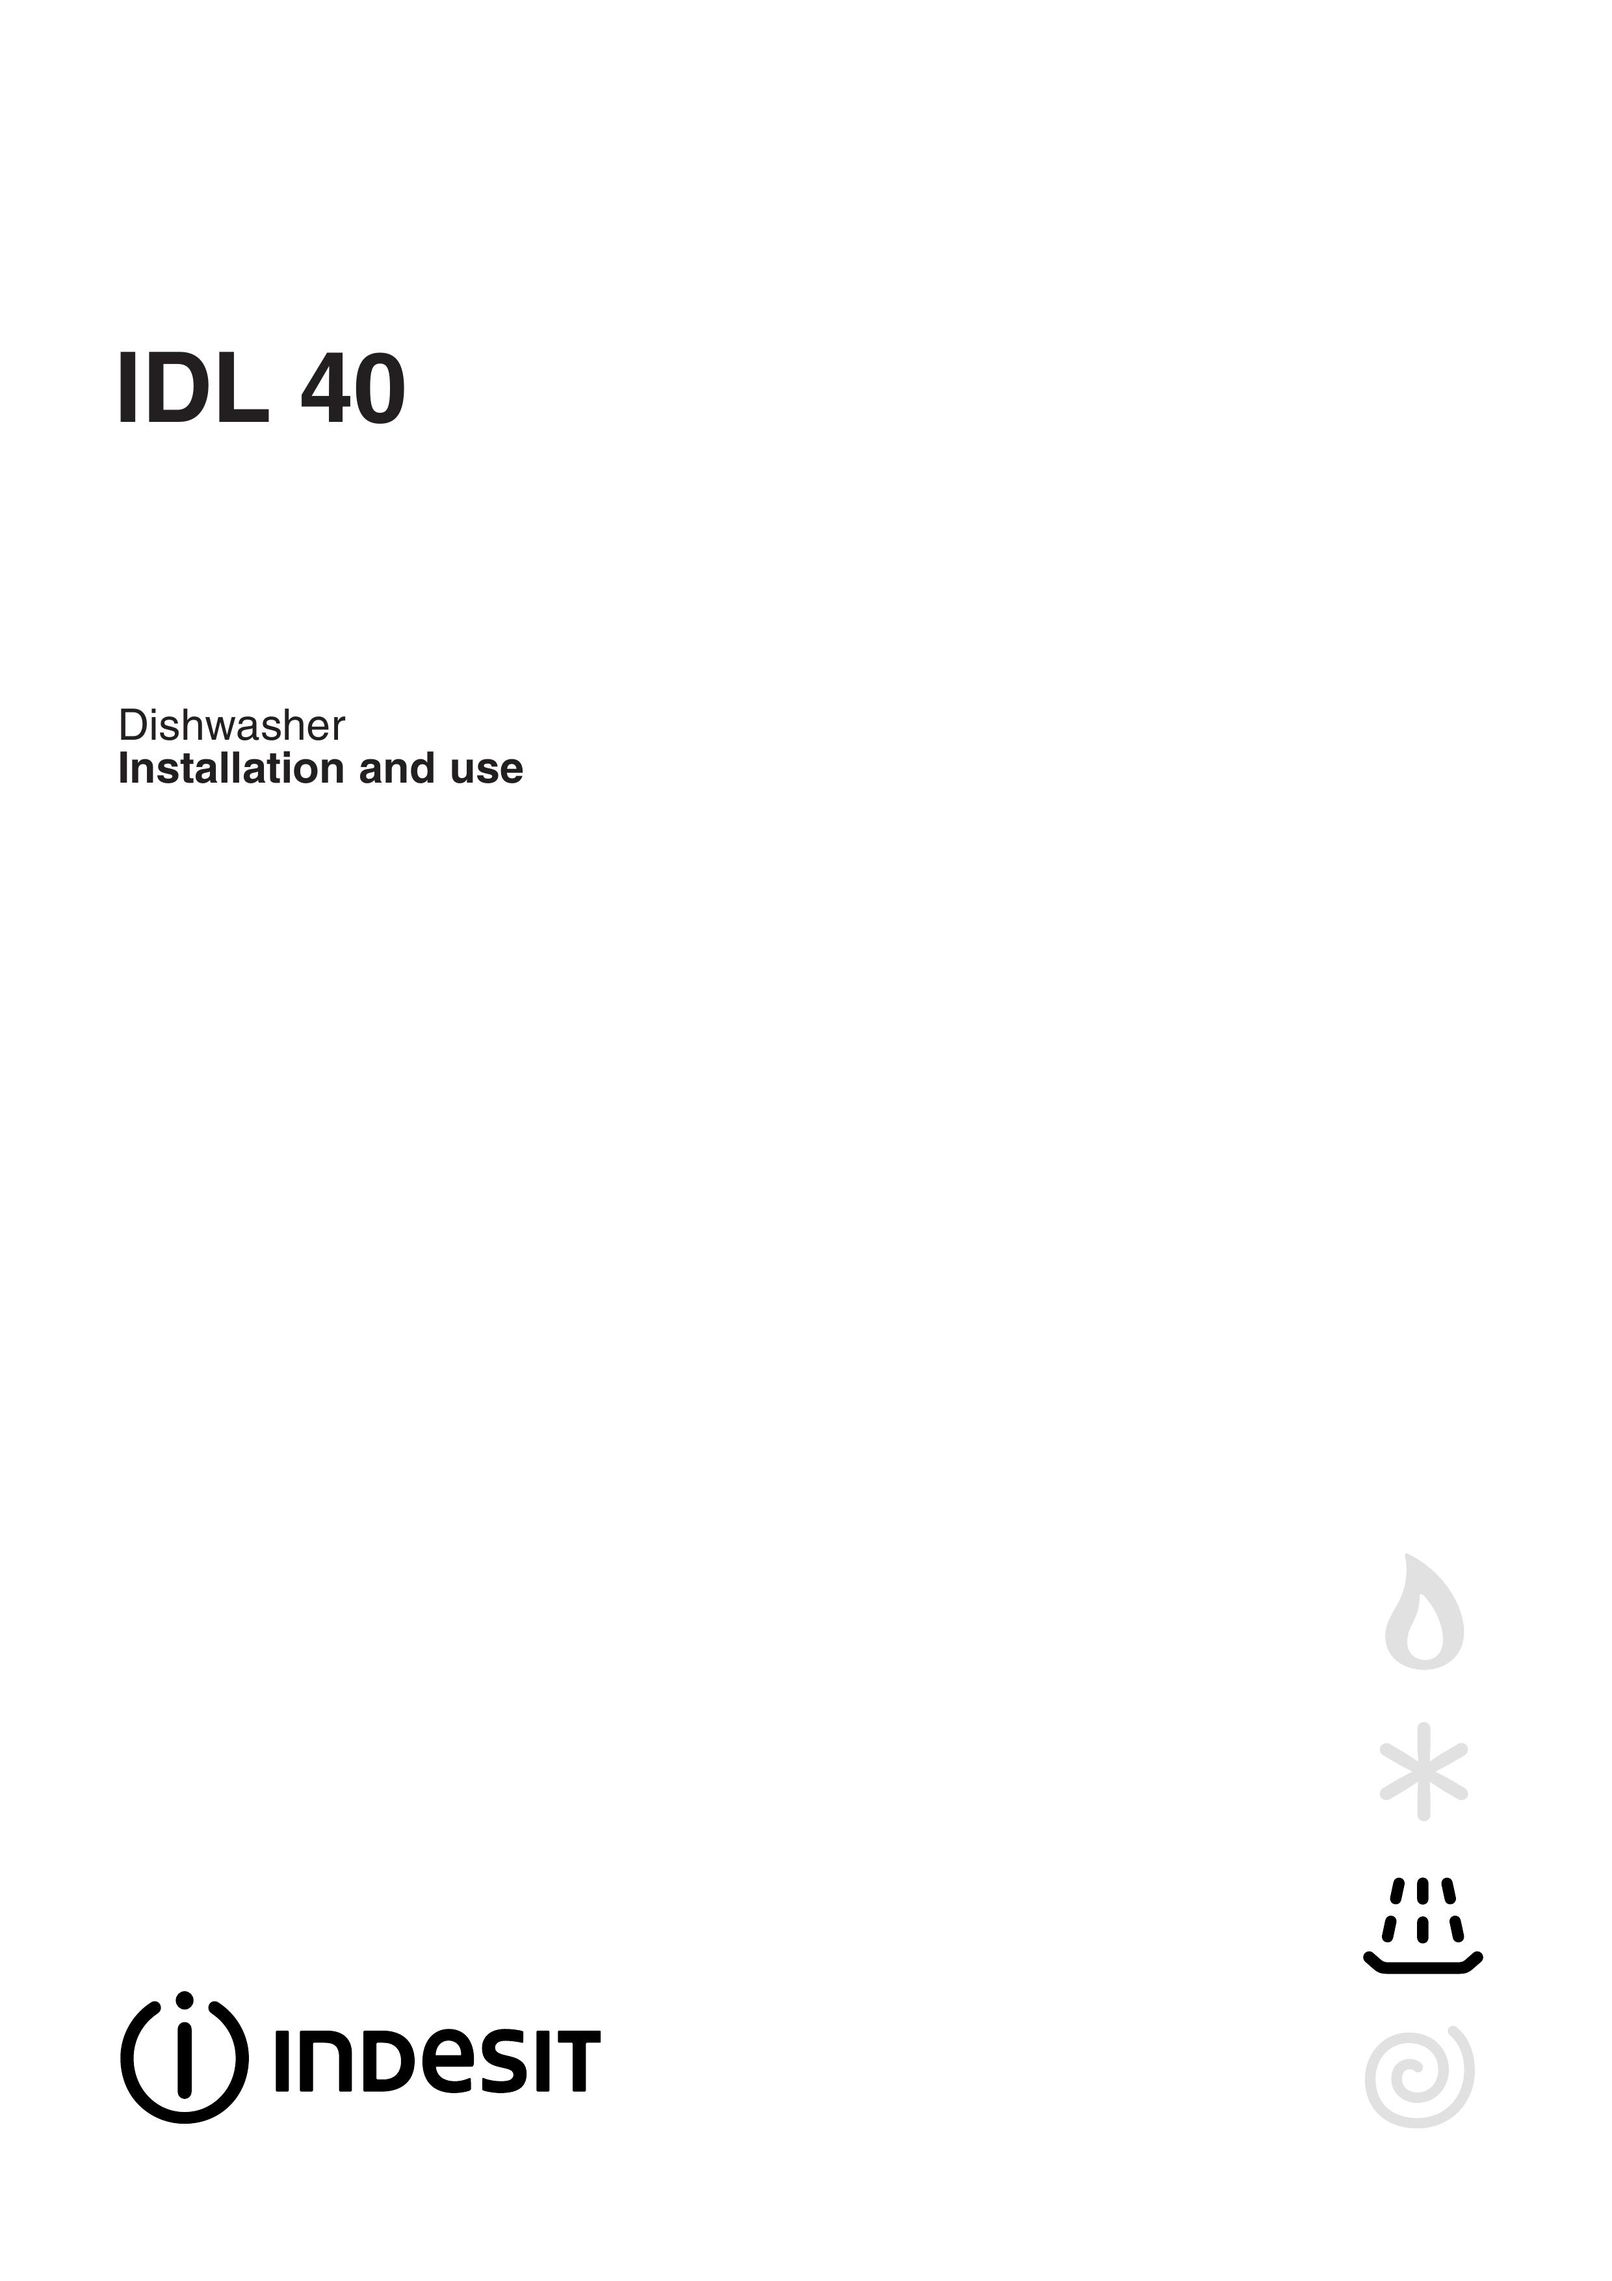 Indesit IDL 40 Dishwasher User Manual